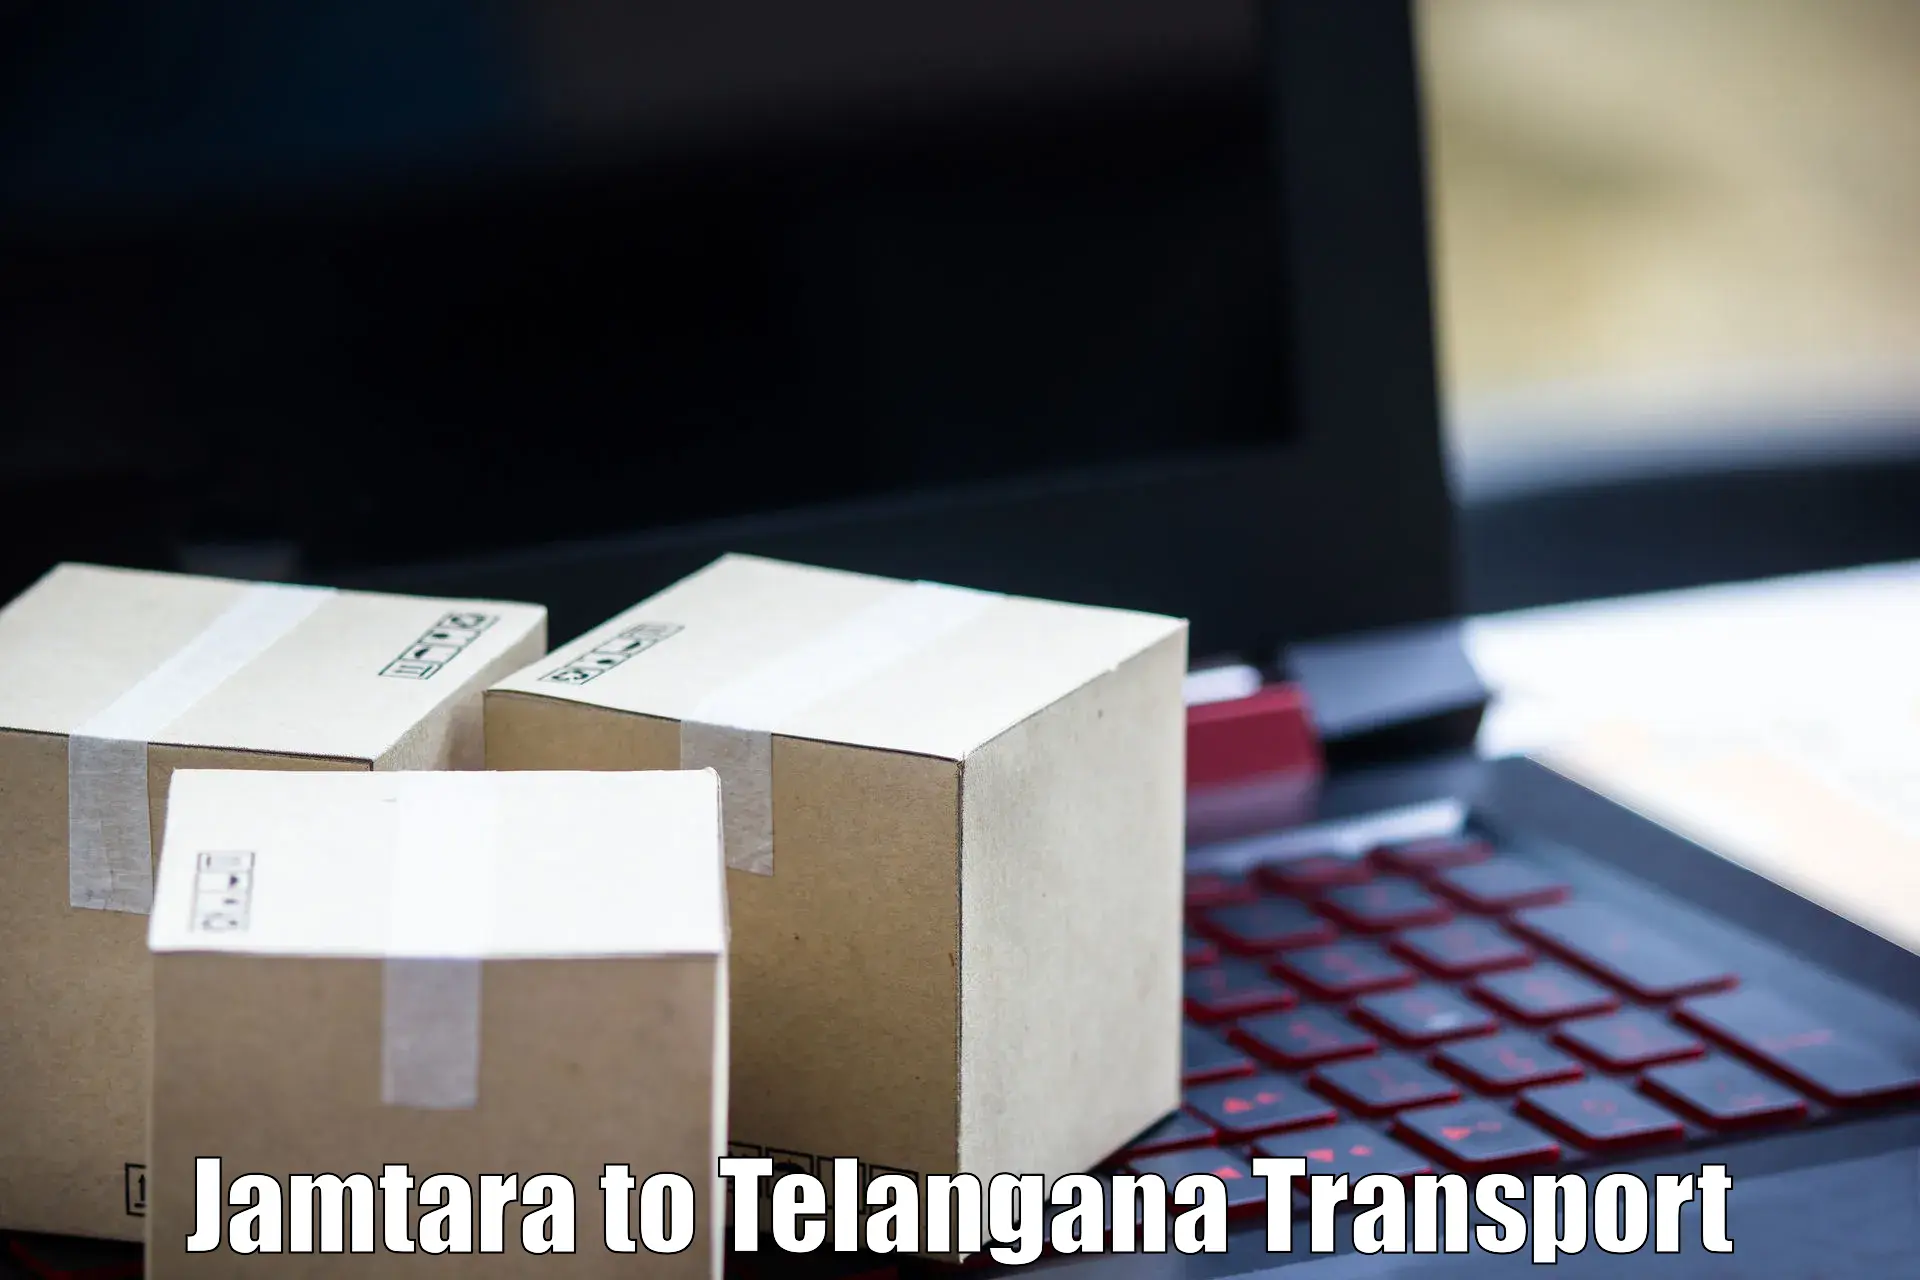 International cargo transportation services Jamtara to Mahabub Nagar